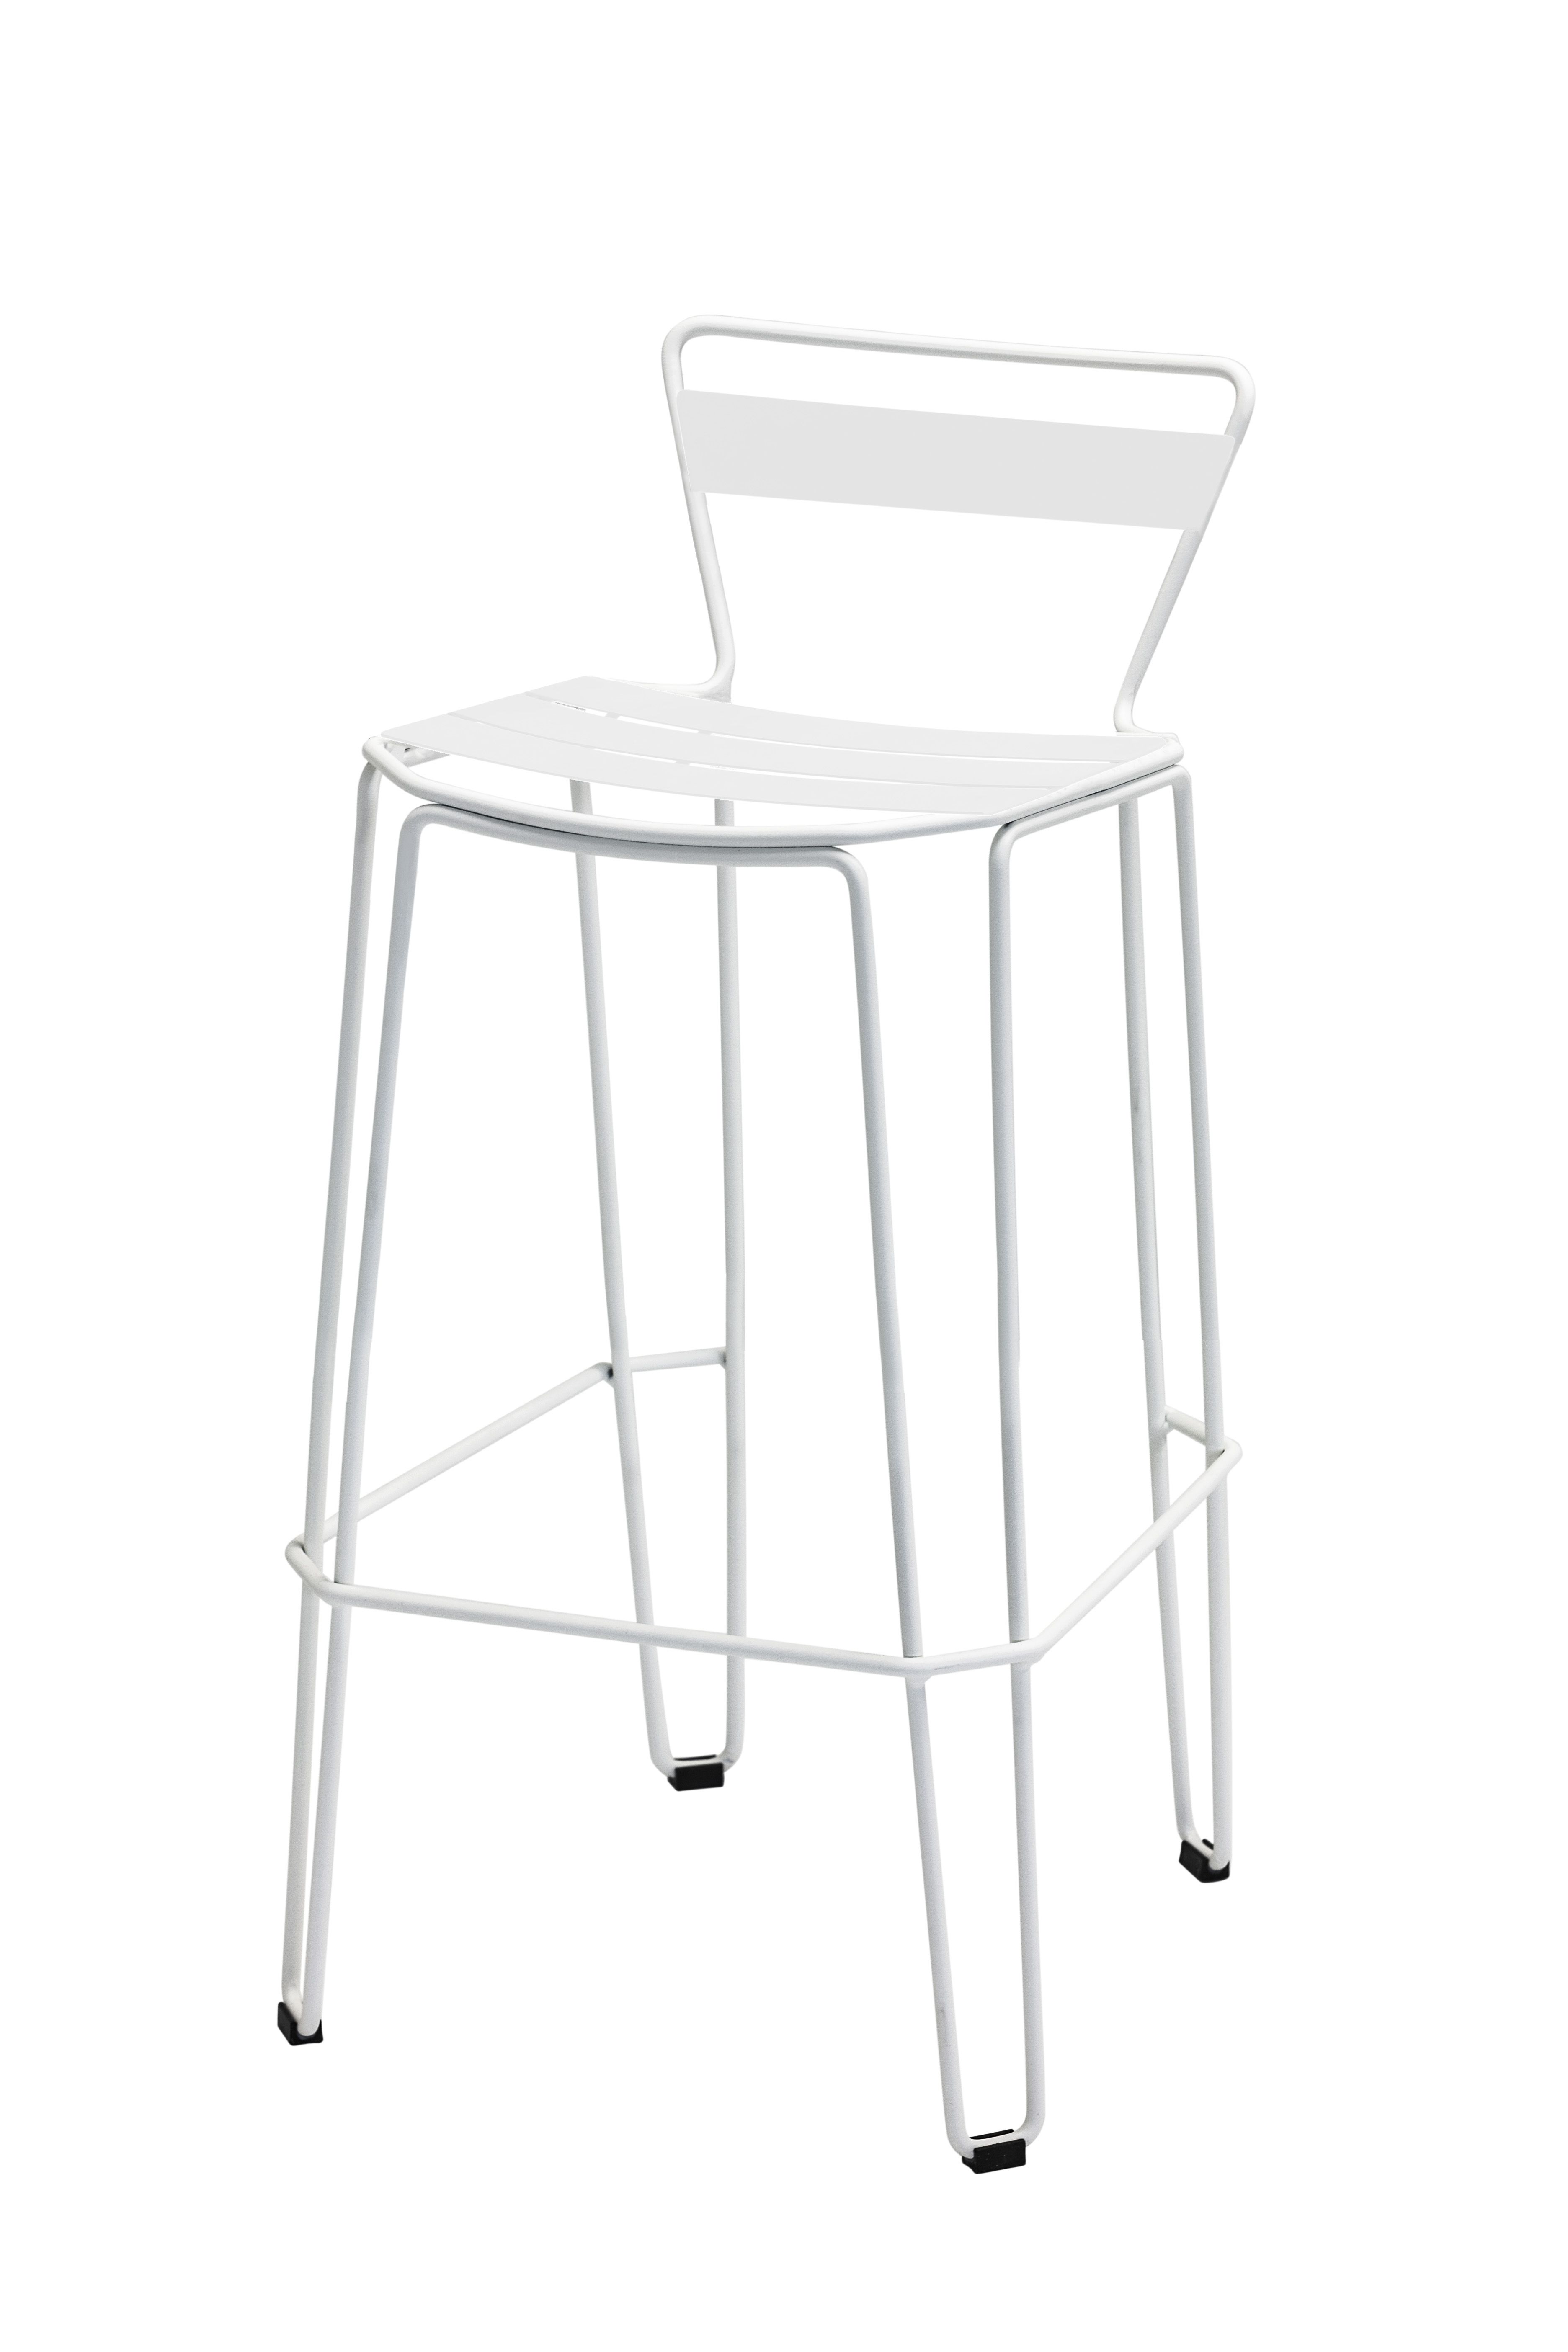 ISIMAR - Barová stolička MALLORCA nízka - biela